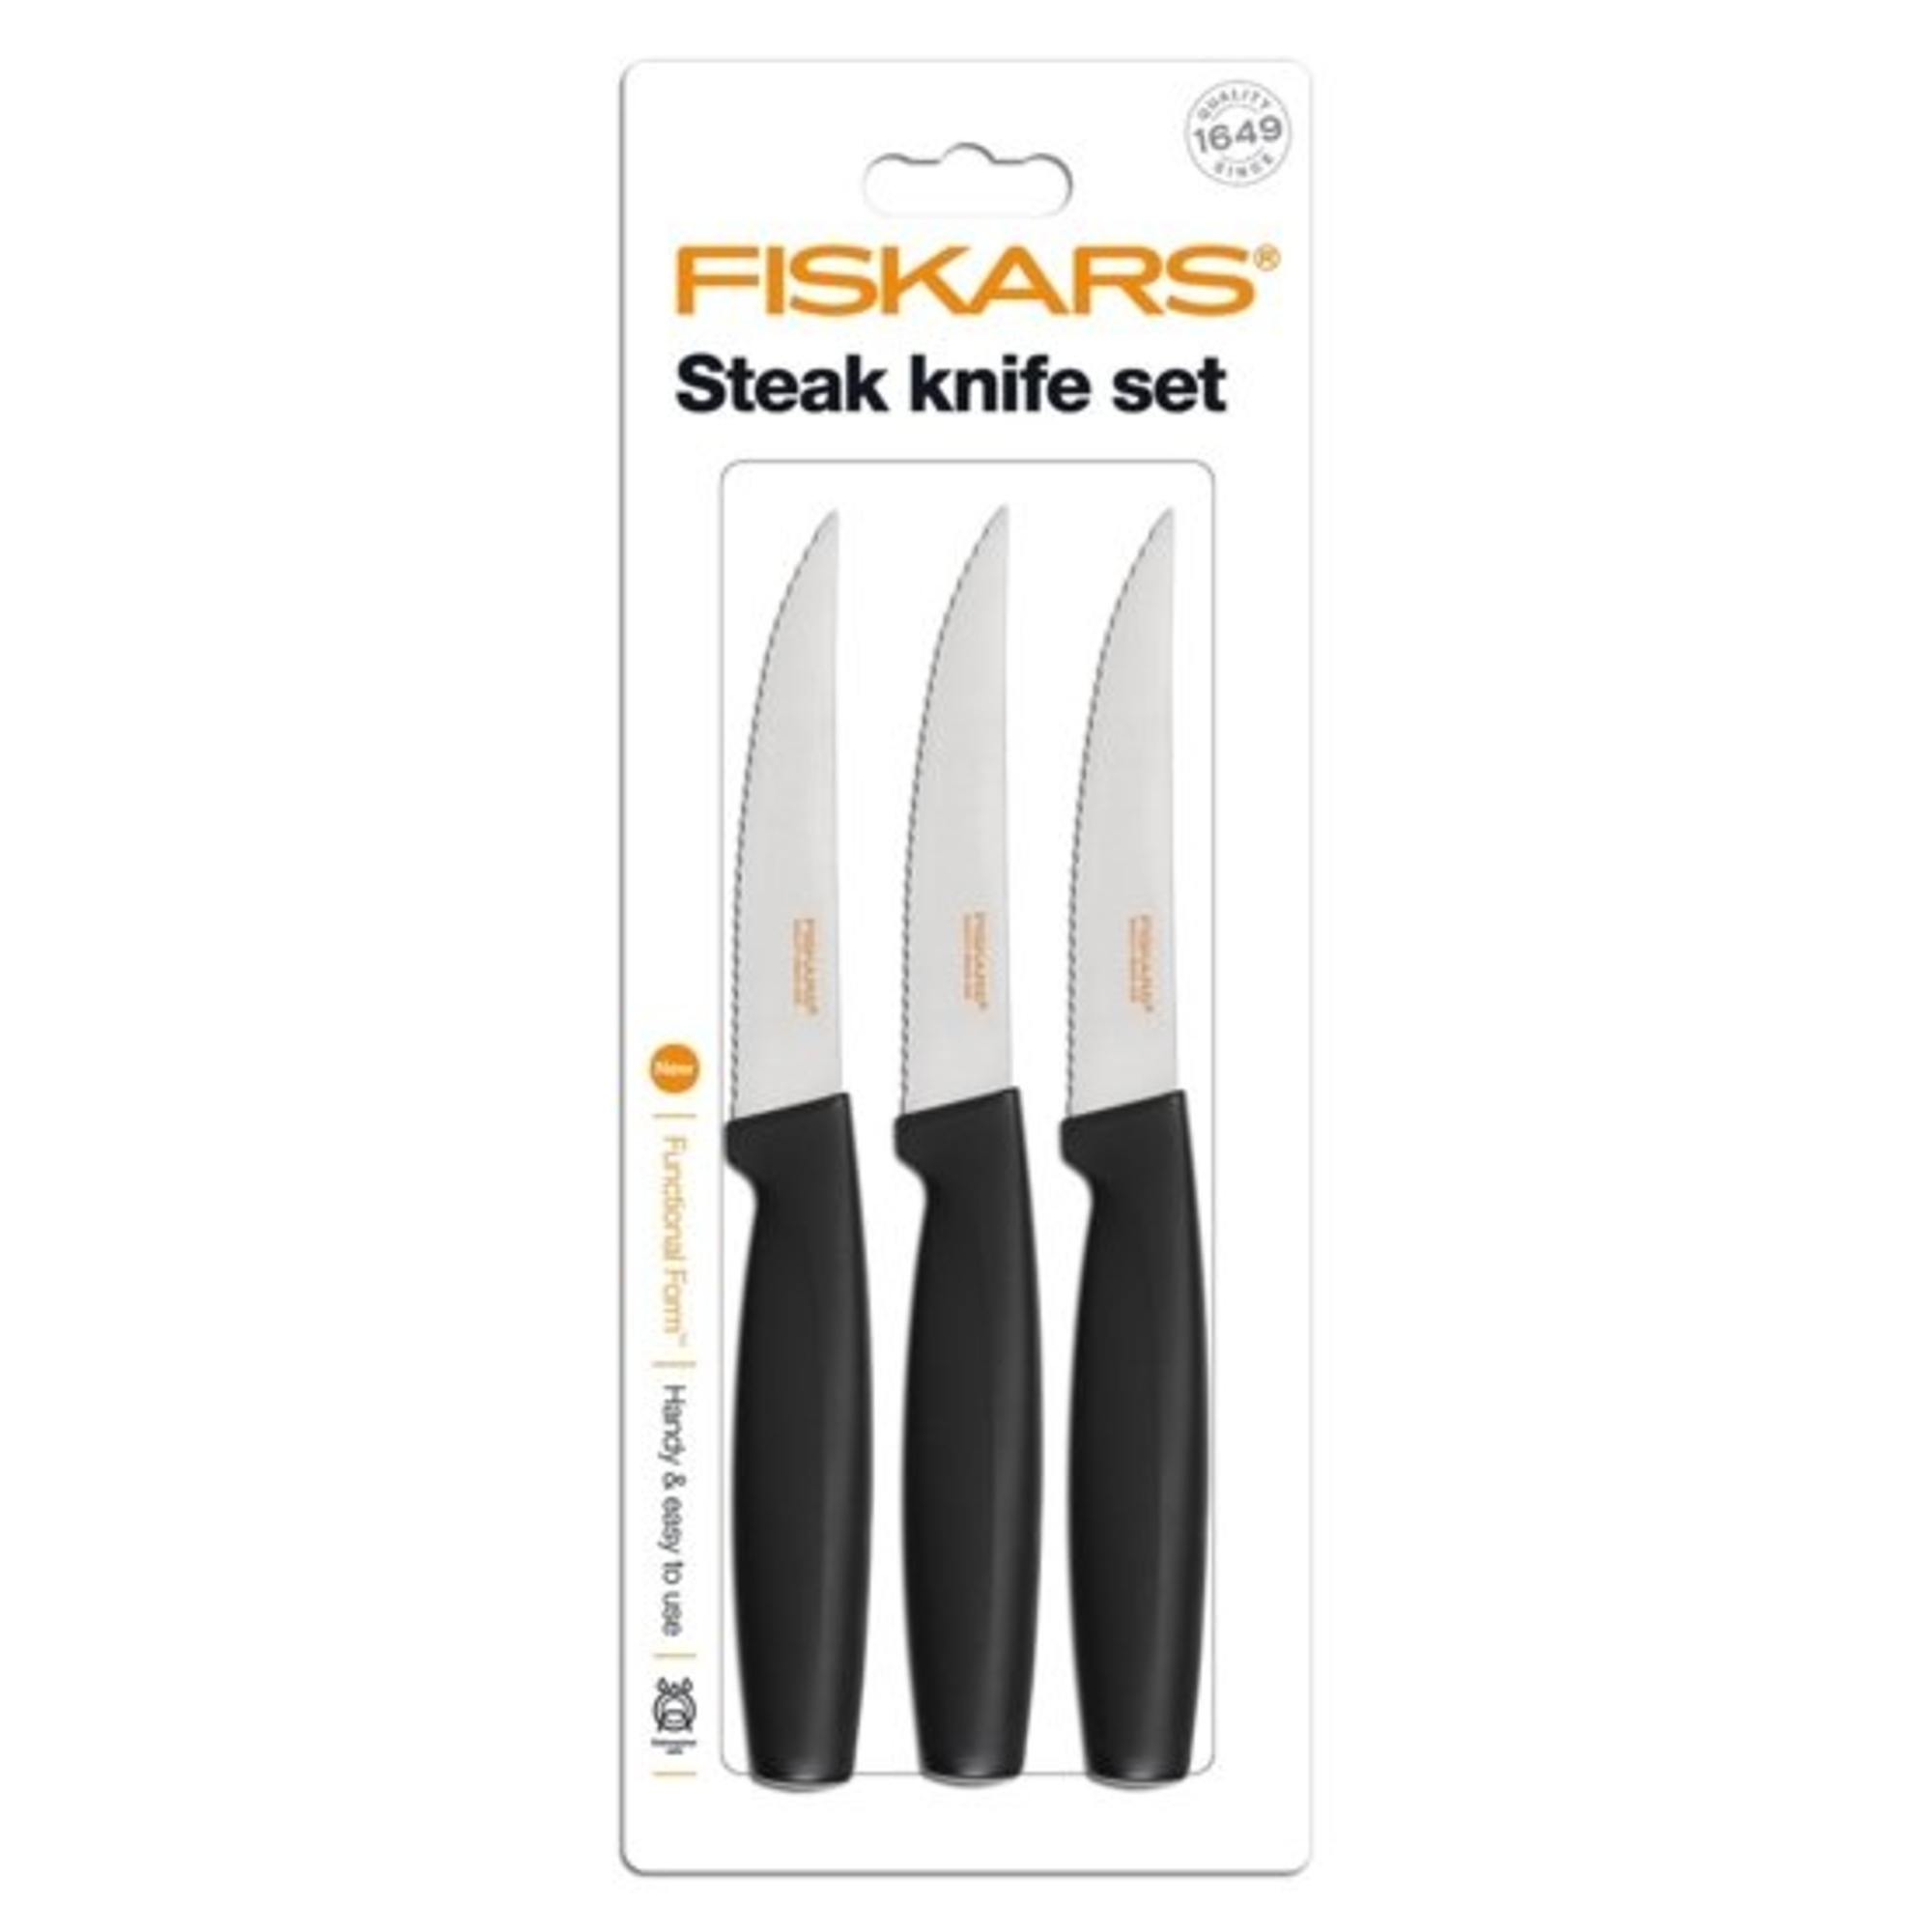 Fiskars Steak késkészlet, fekete, 3db-os - 1014280